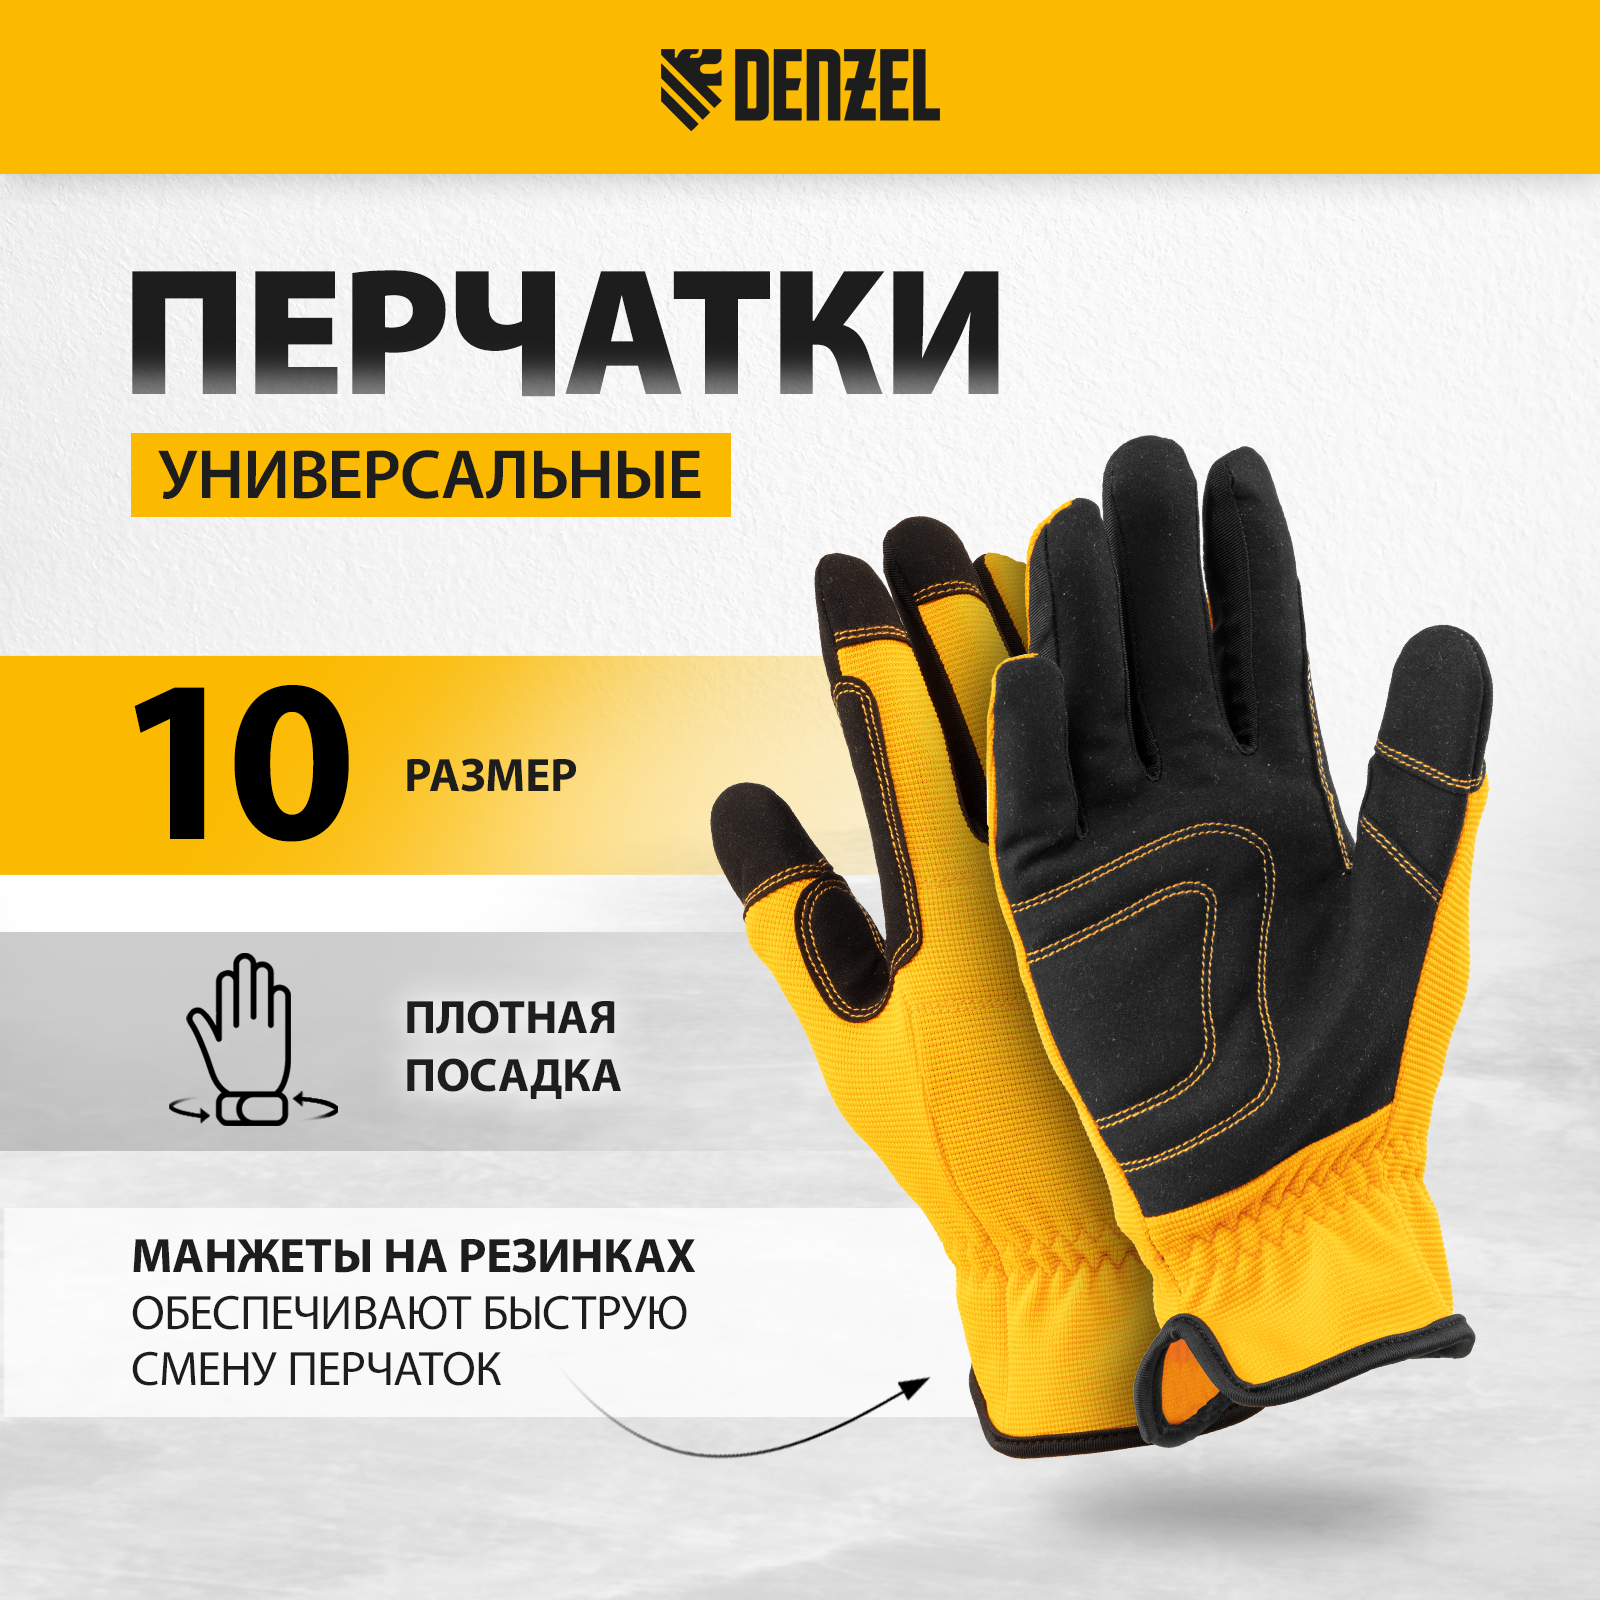 Перчатки универсальные DENZEL размер 10 67997 перчатки универсальные denzel усиленные с защитными накладками 68003